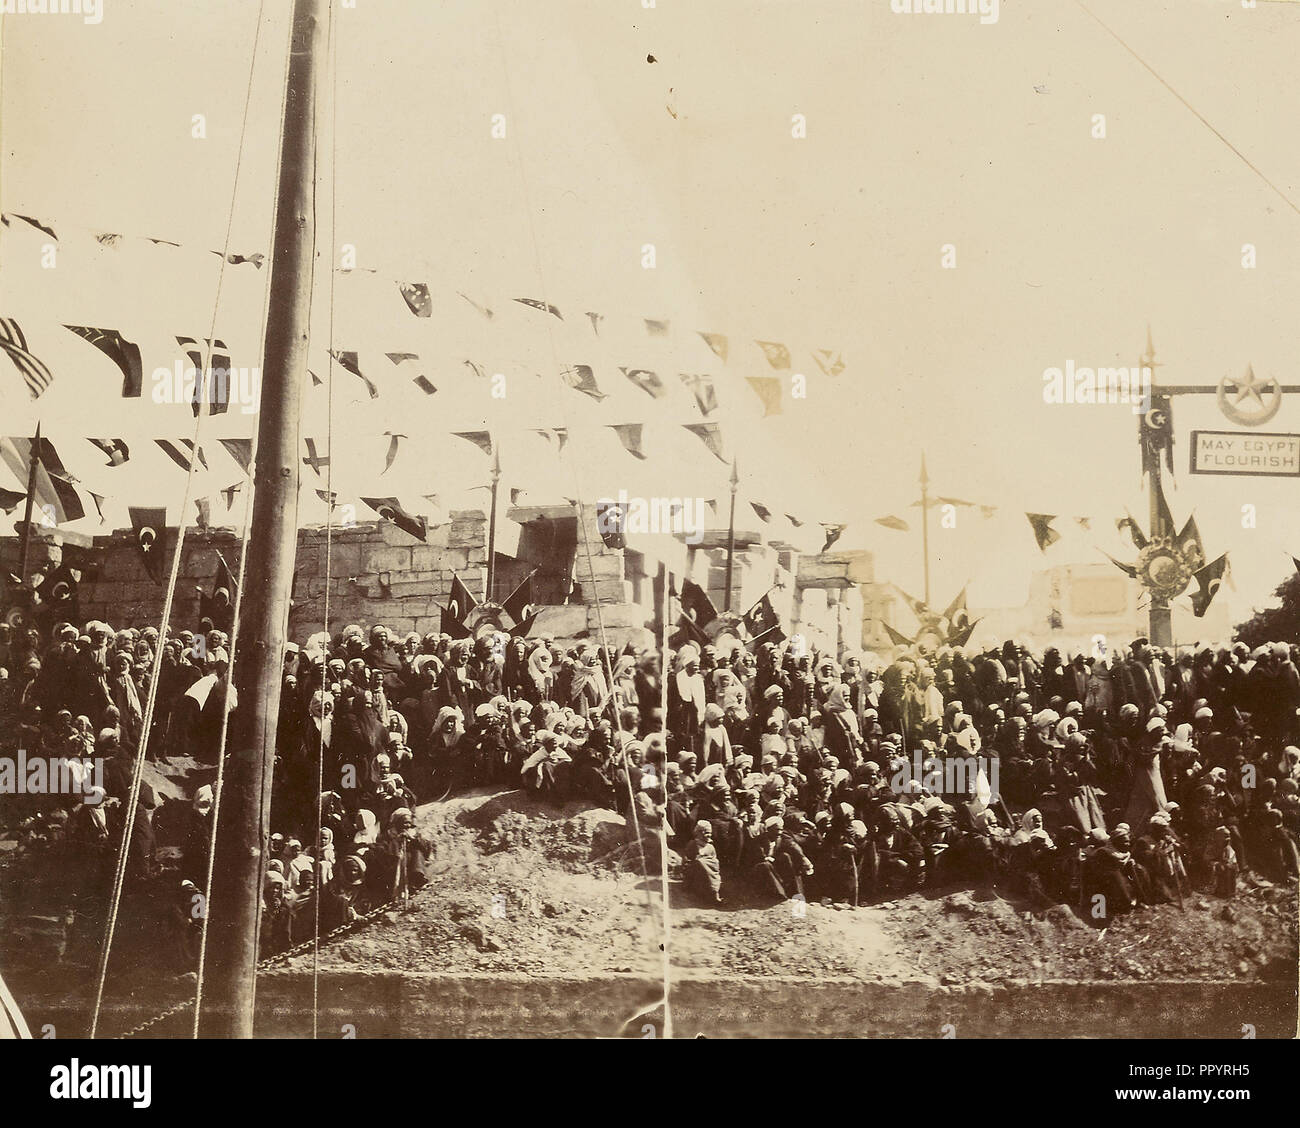 Menge unter multi-nationale Flaggen; Ägypten; 1860 - 1880; getönte Eiweiß silber Drucken Stockfoto